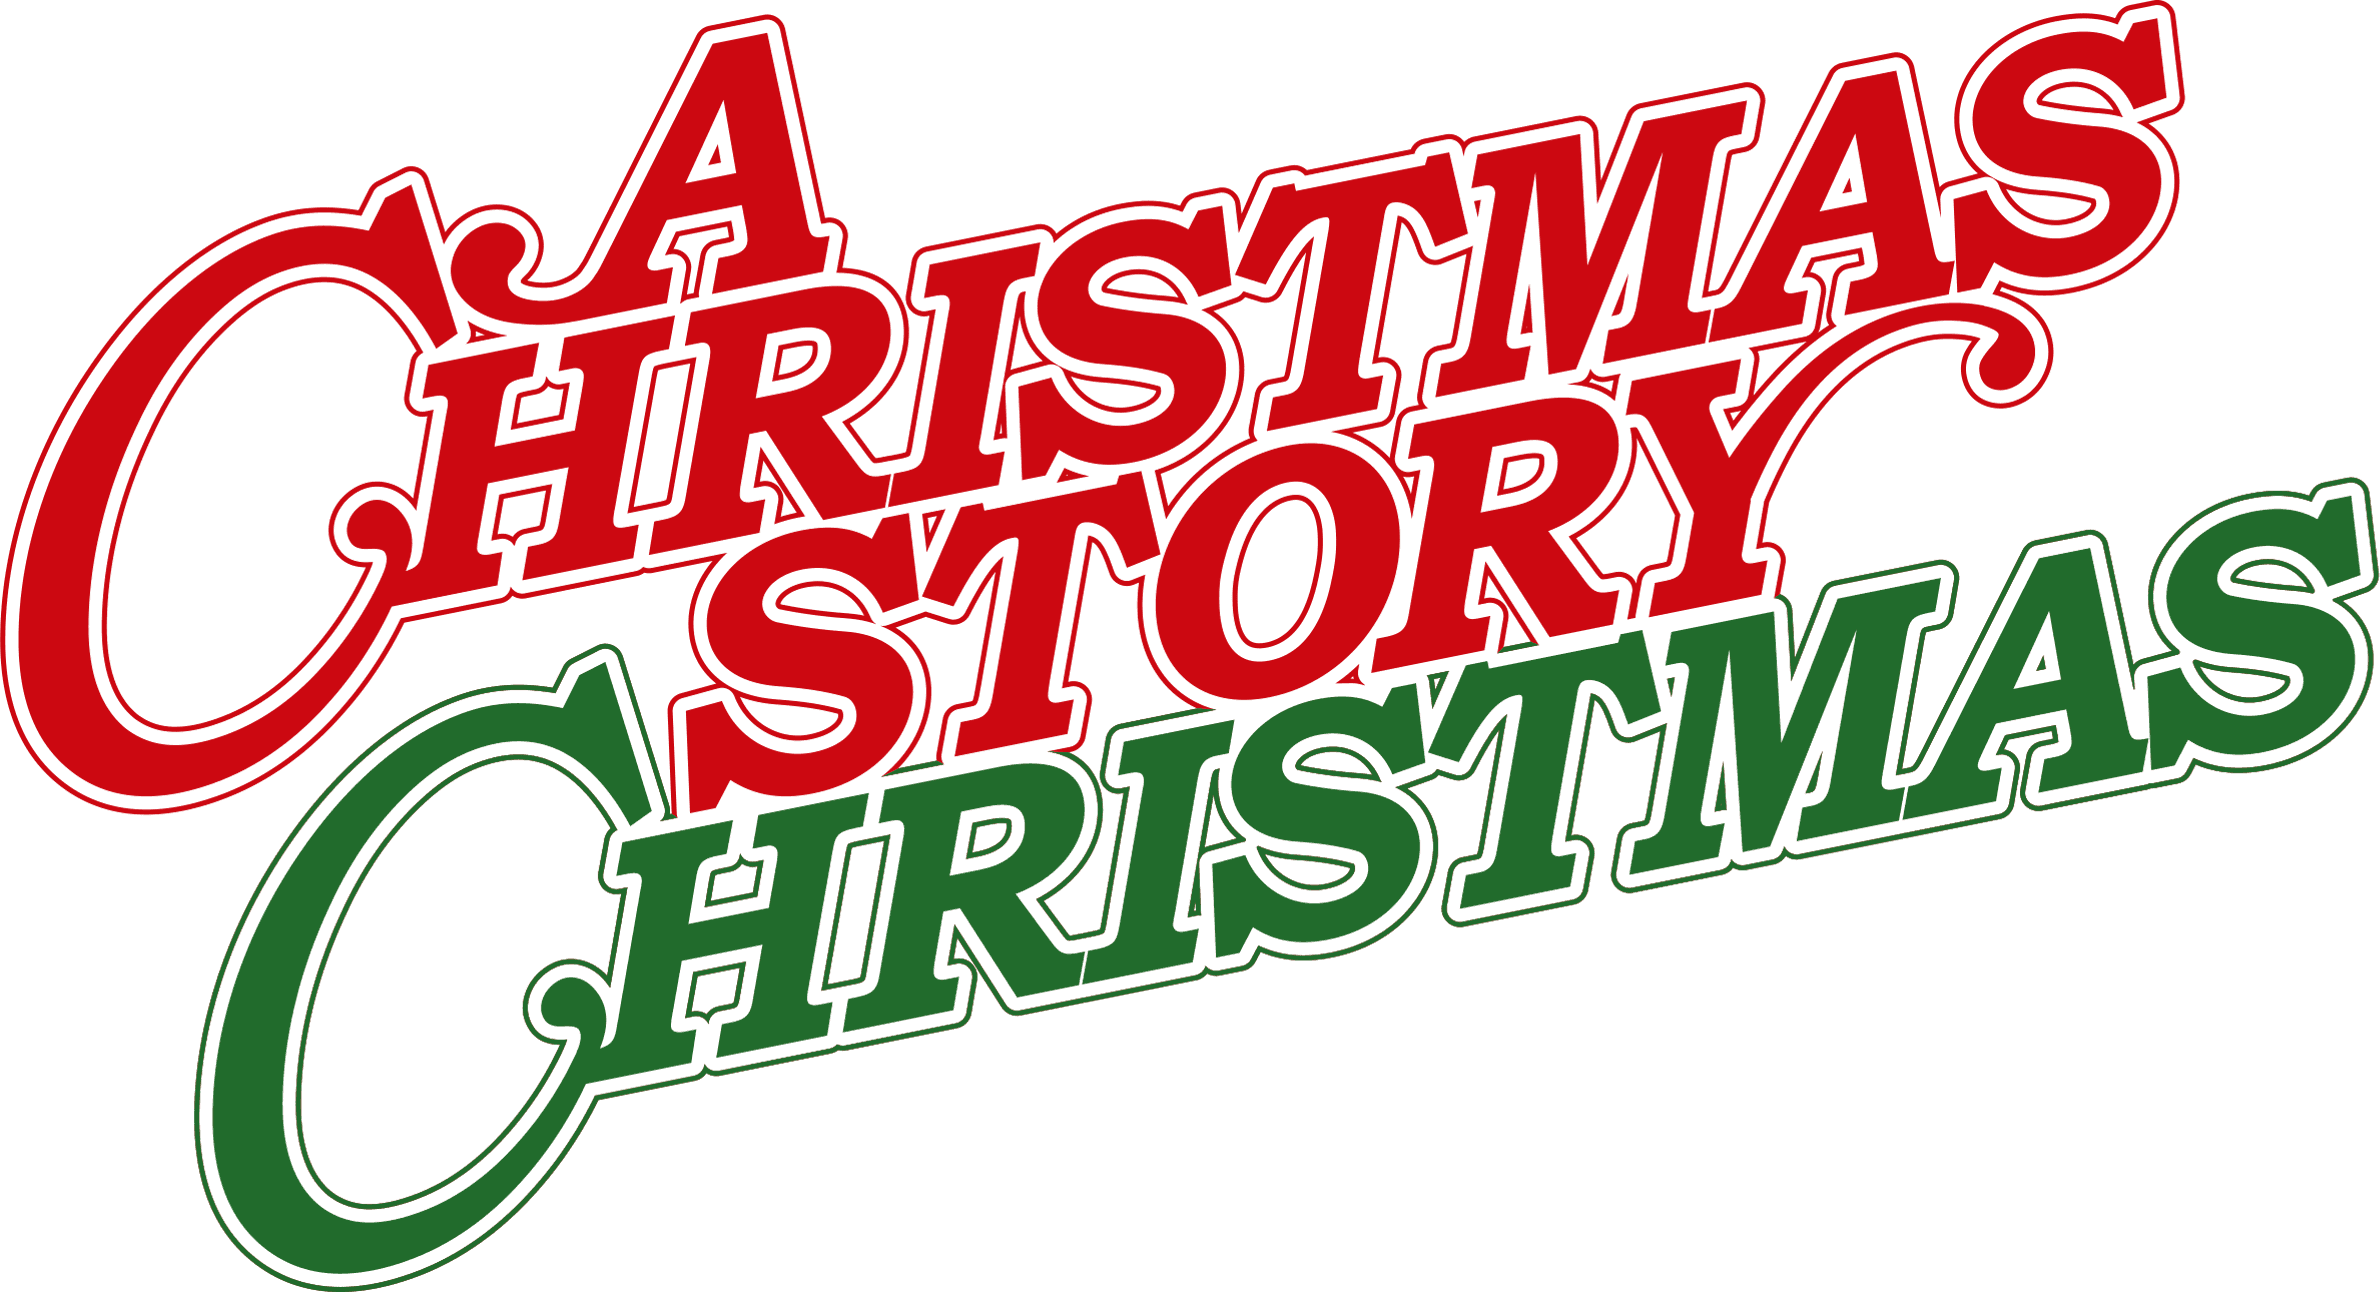 A Christmas Story Christmas logo